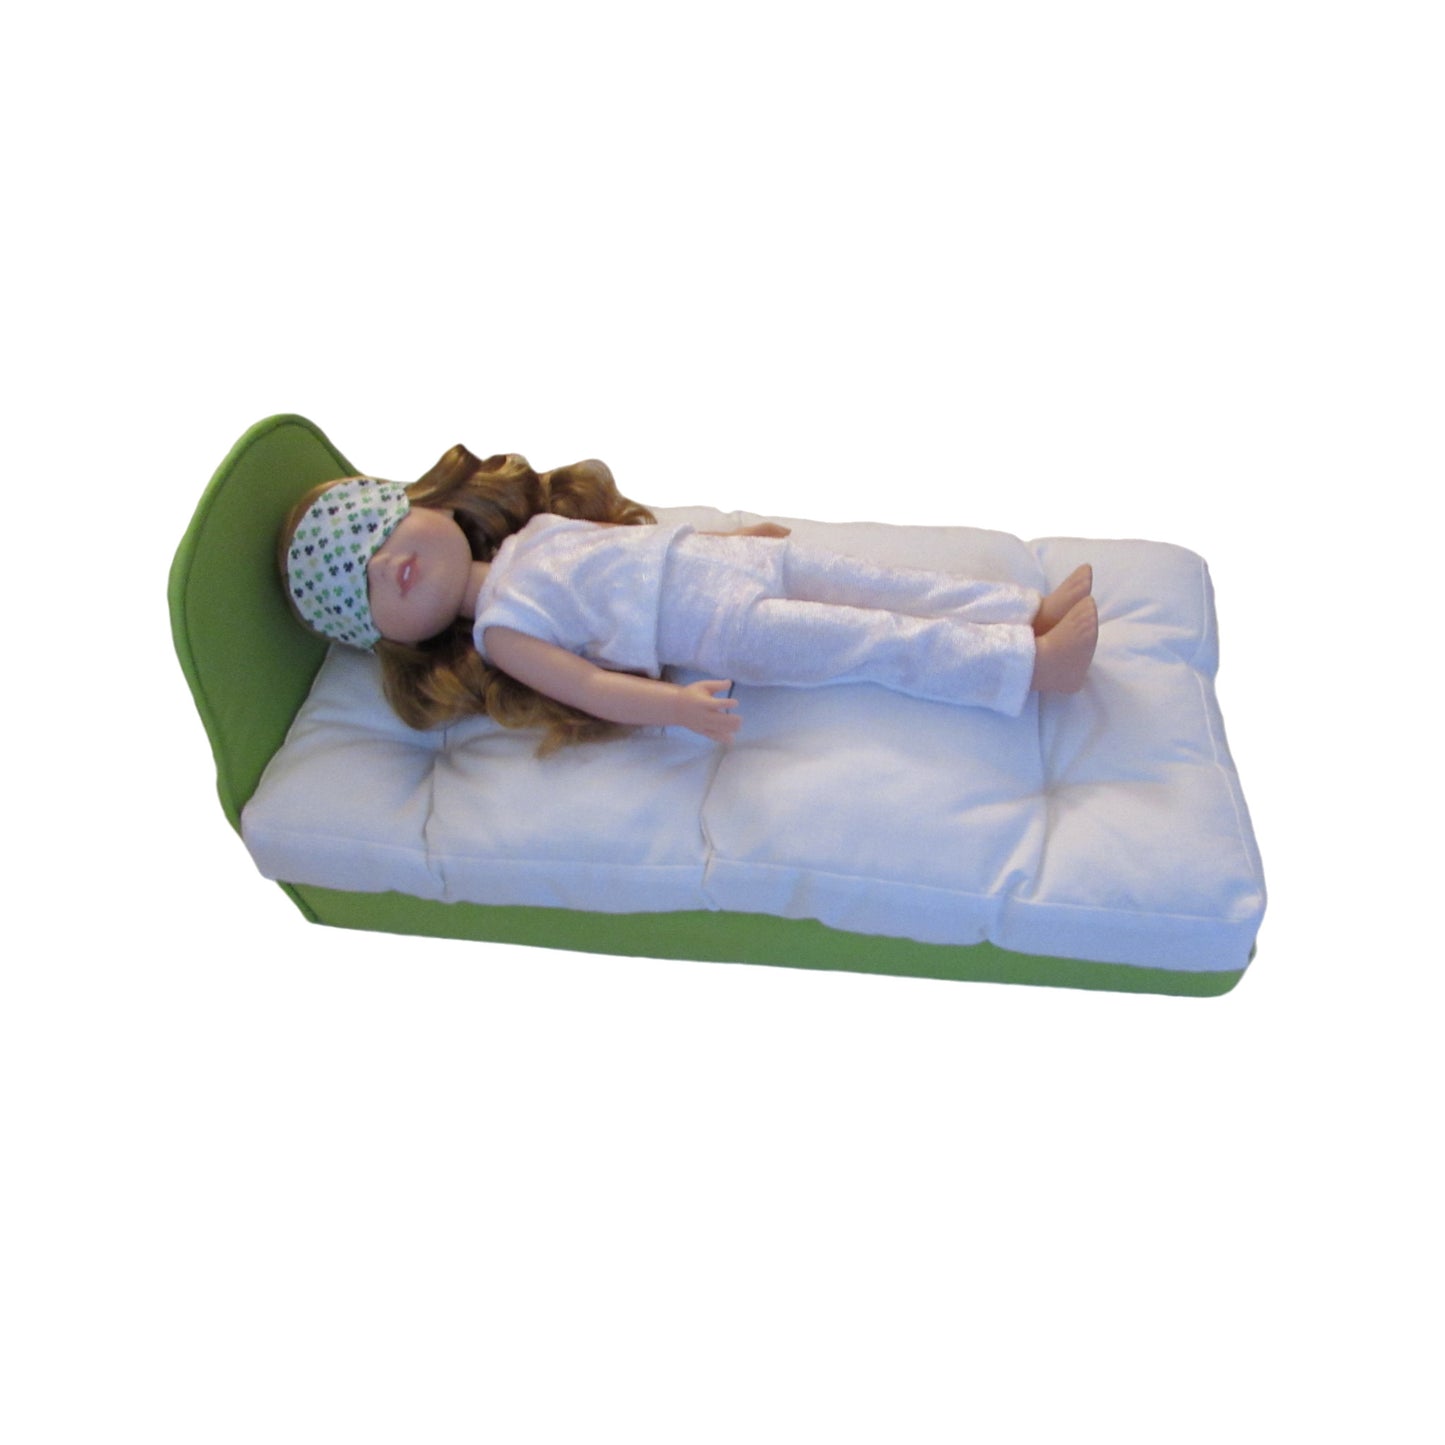 Upholstered Light Green Doll Bed for 14.5-inch dolls doll in white panne velvet pajamas and clover eye mask